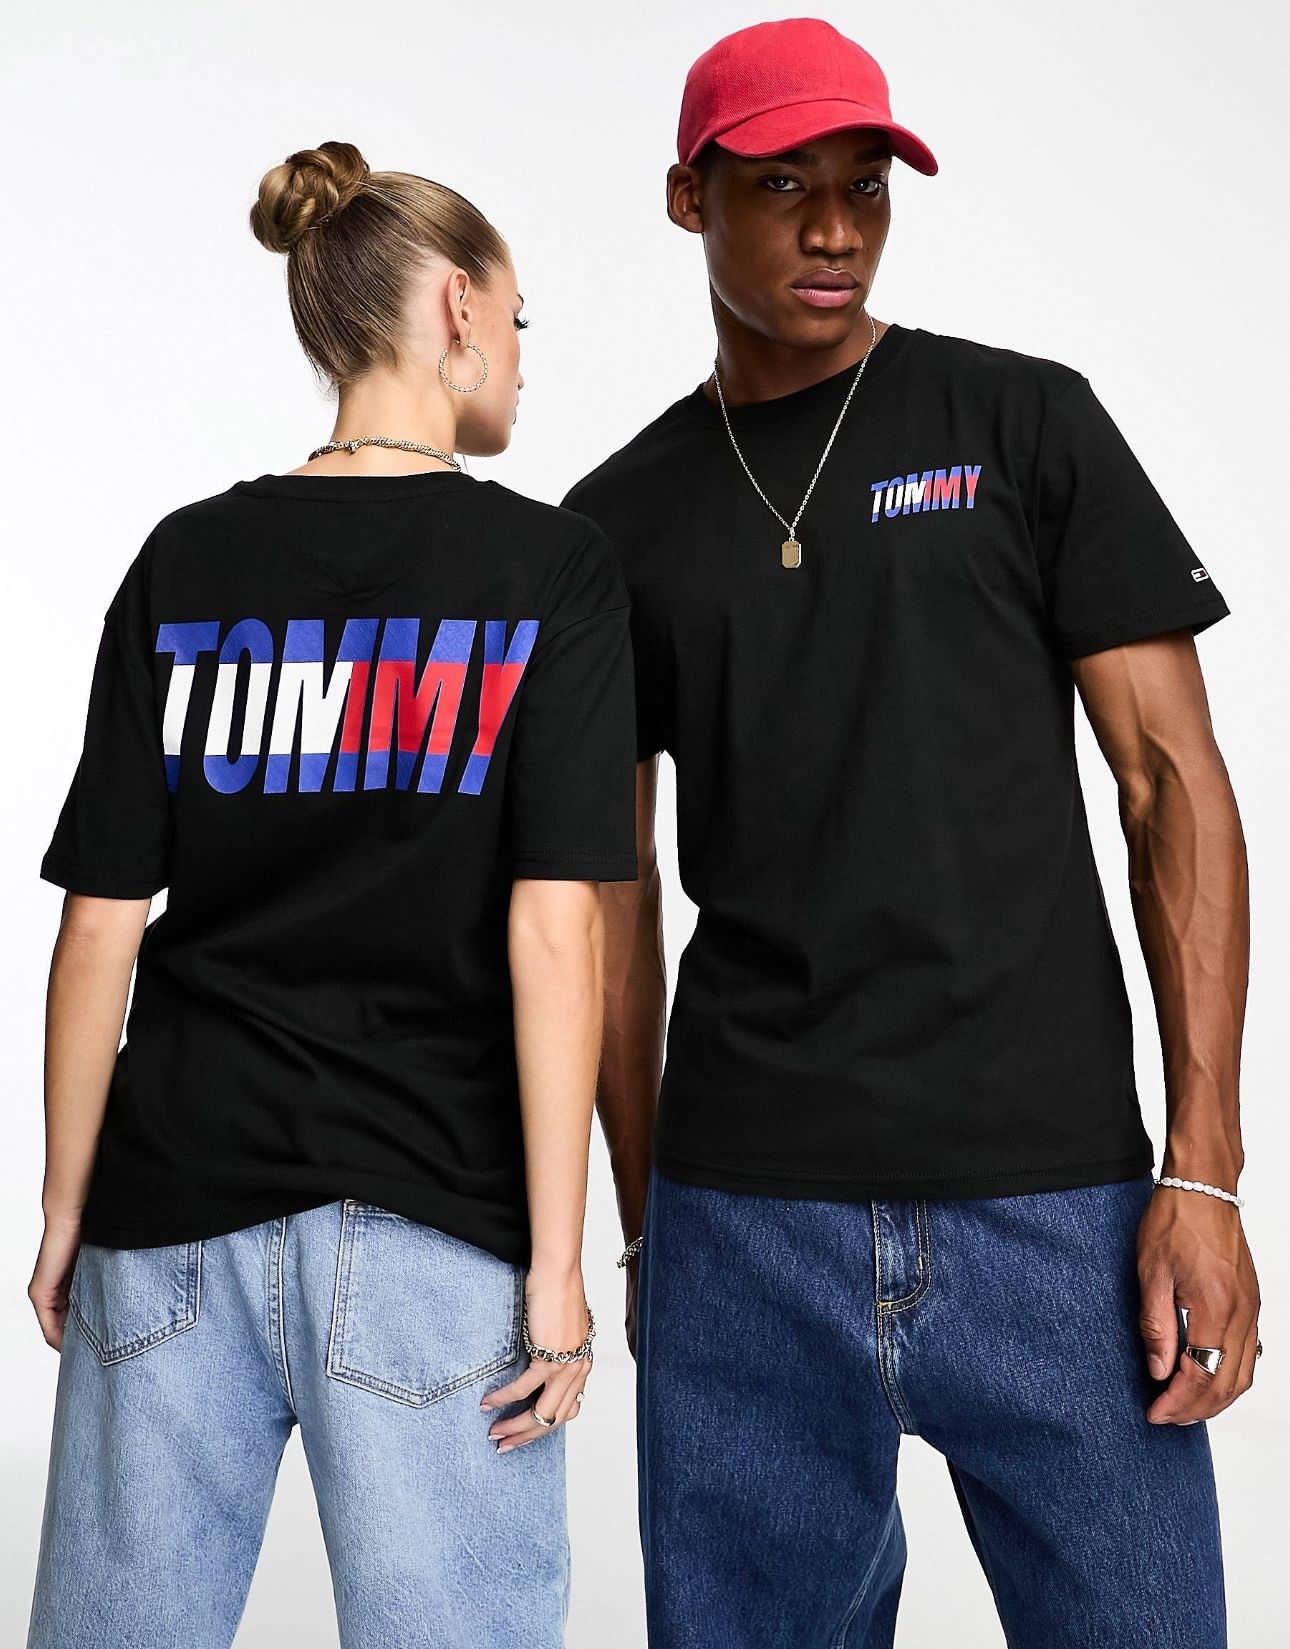 T-shirt Tommy Hilfiger original negro con letras TOMMY en rojo, azul y blanco.